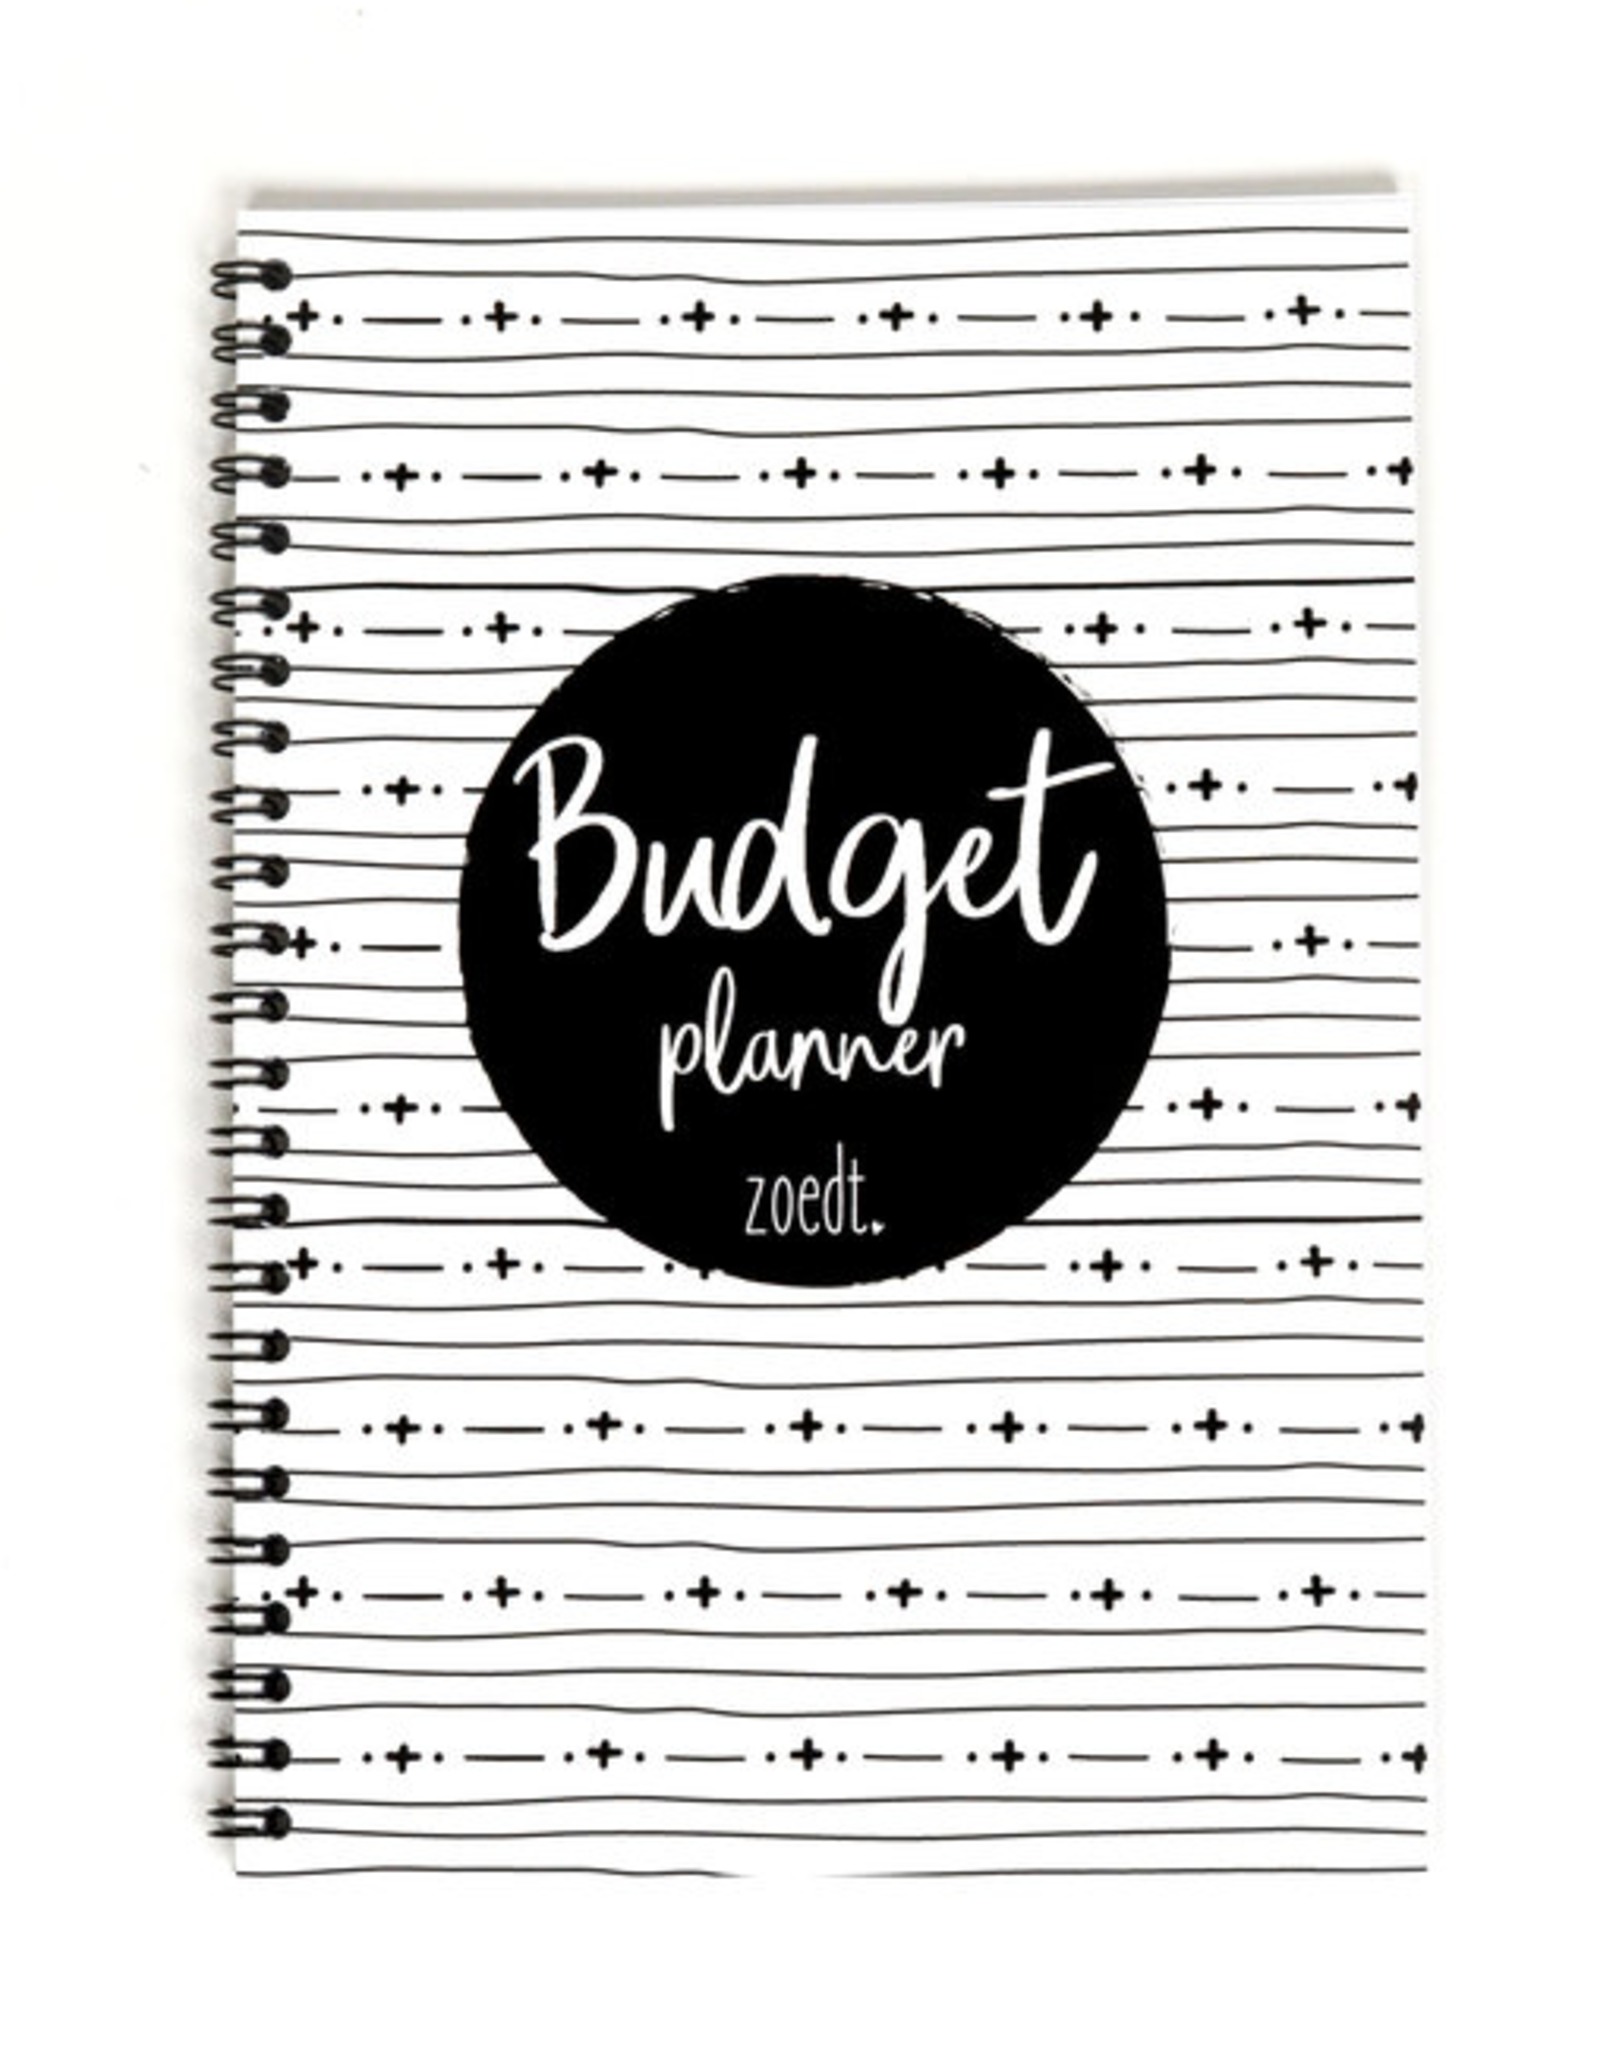 Zoedt Budgetplanner - Zoedt